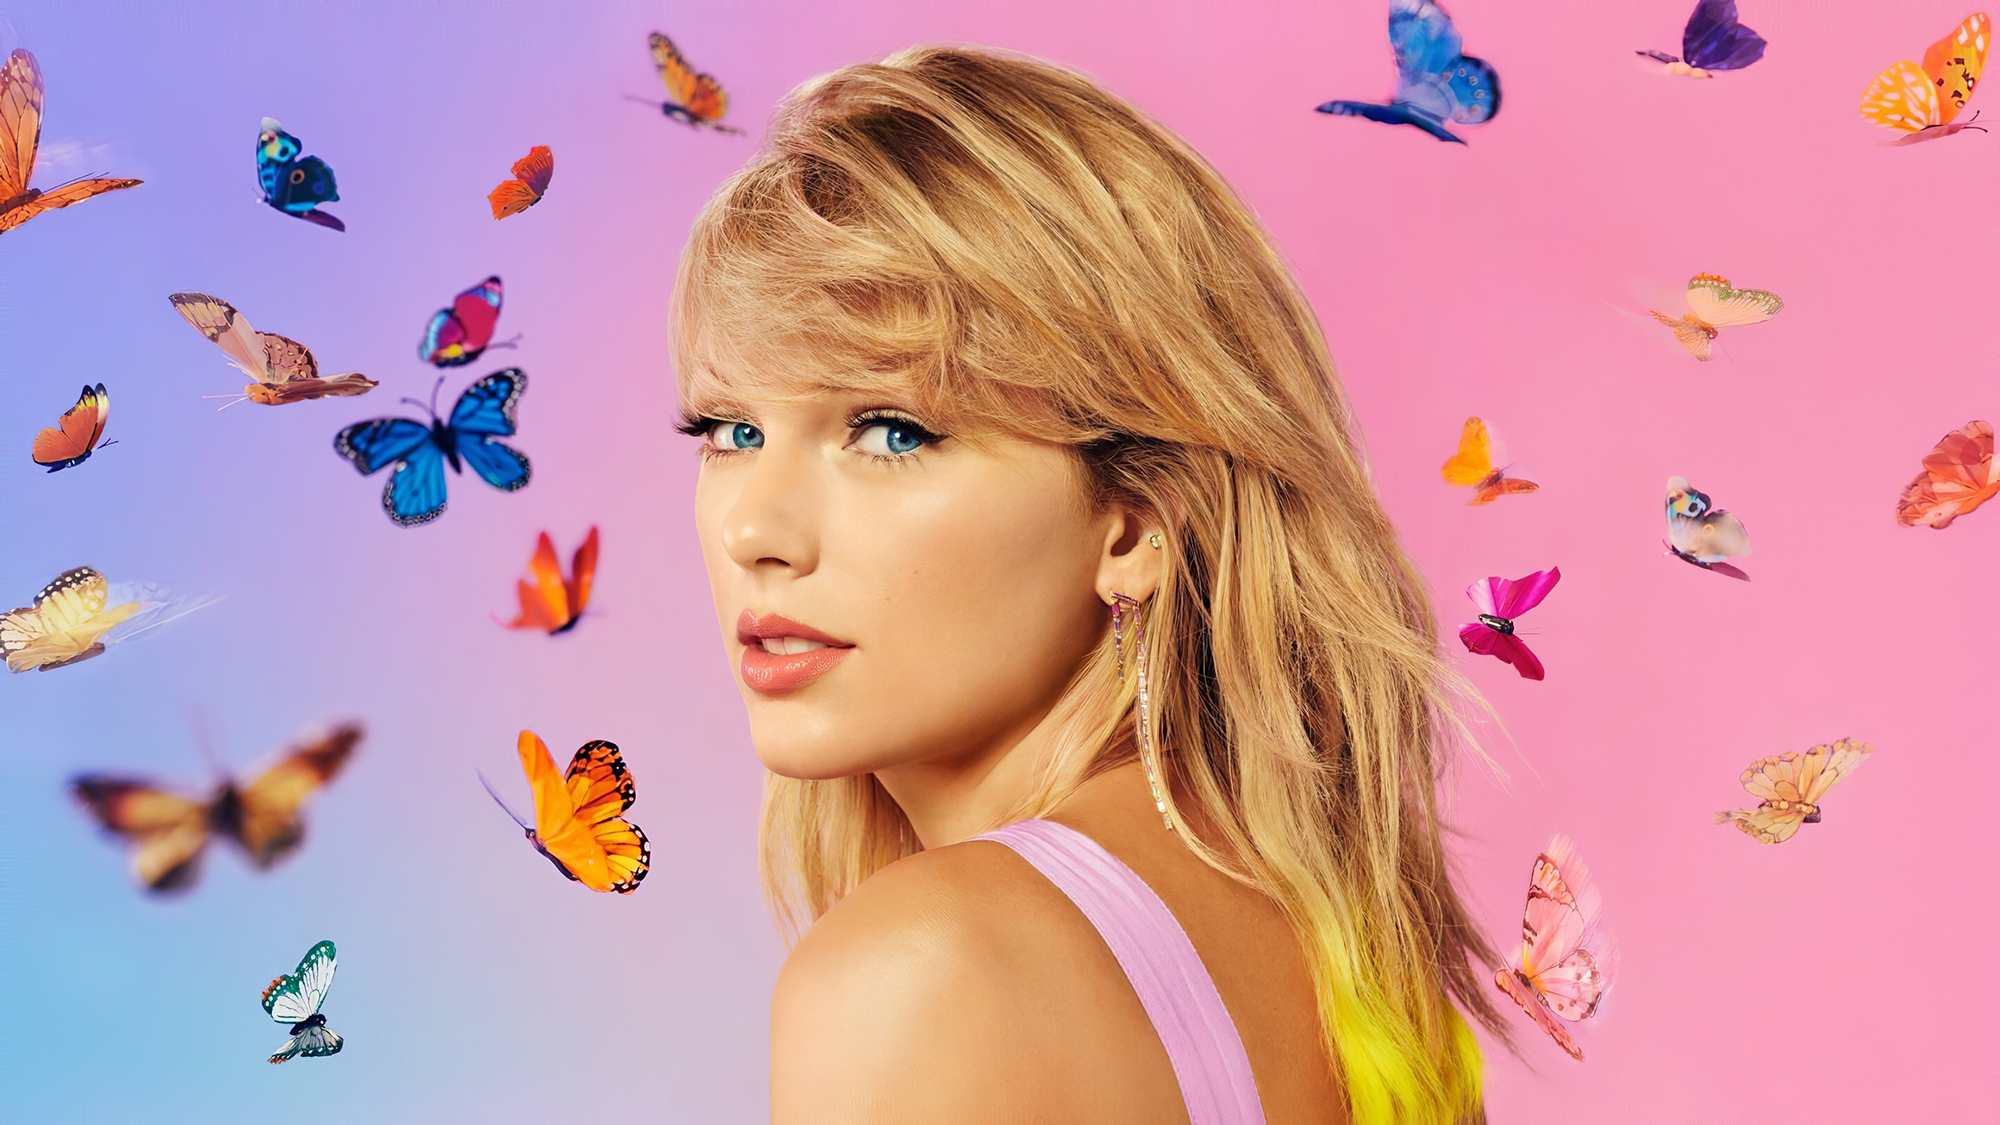 39+] Taylor Swift 2020 Wallpapers - WallpaperSafari